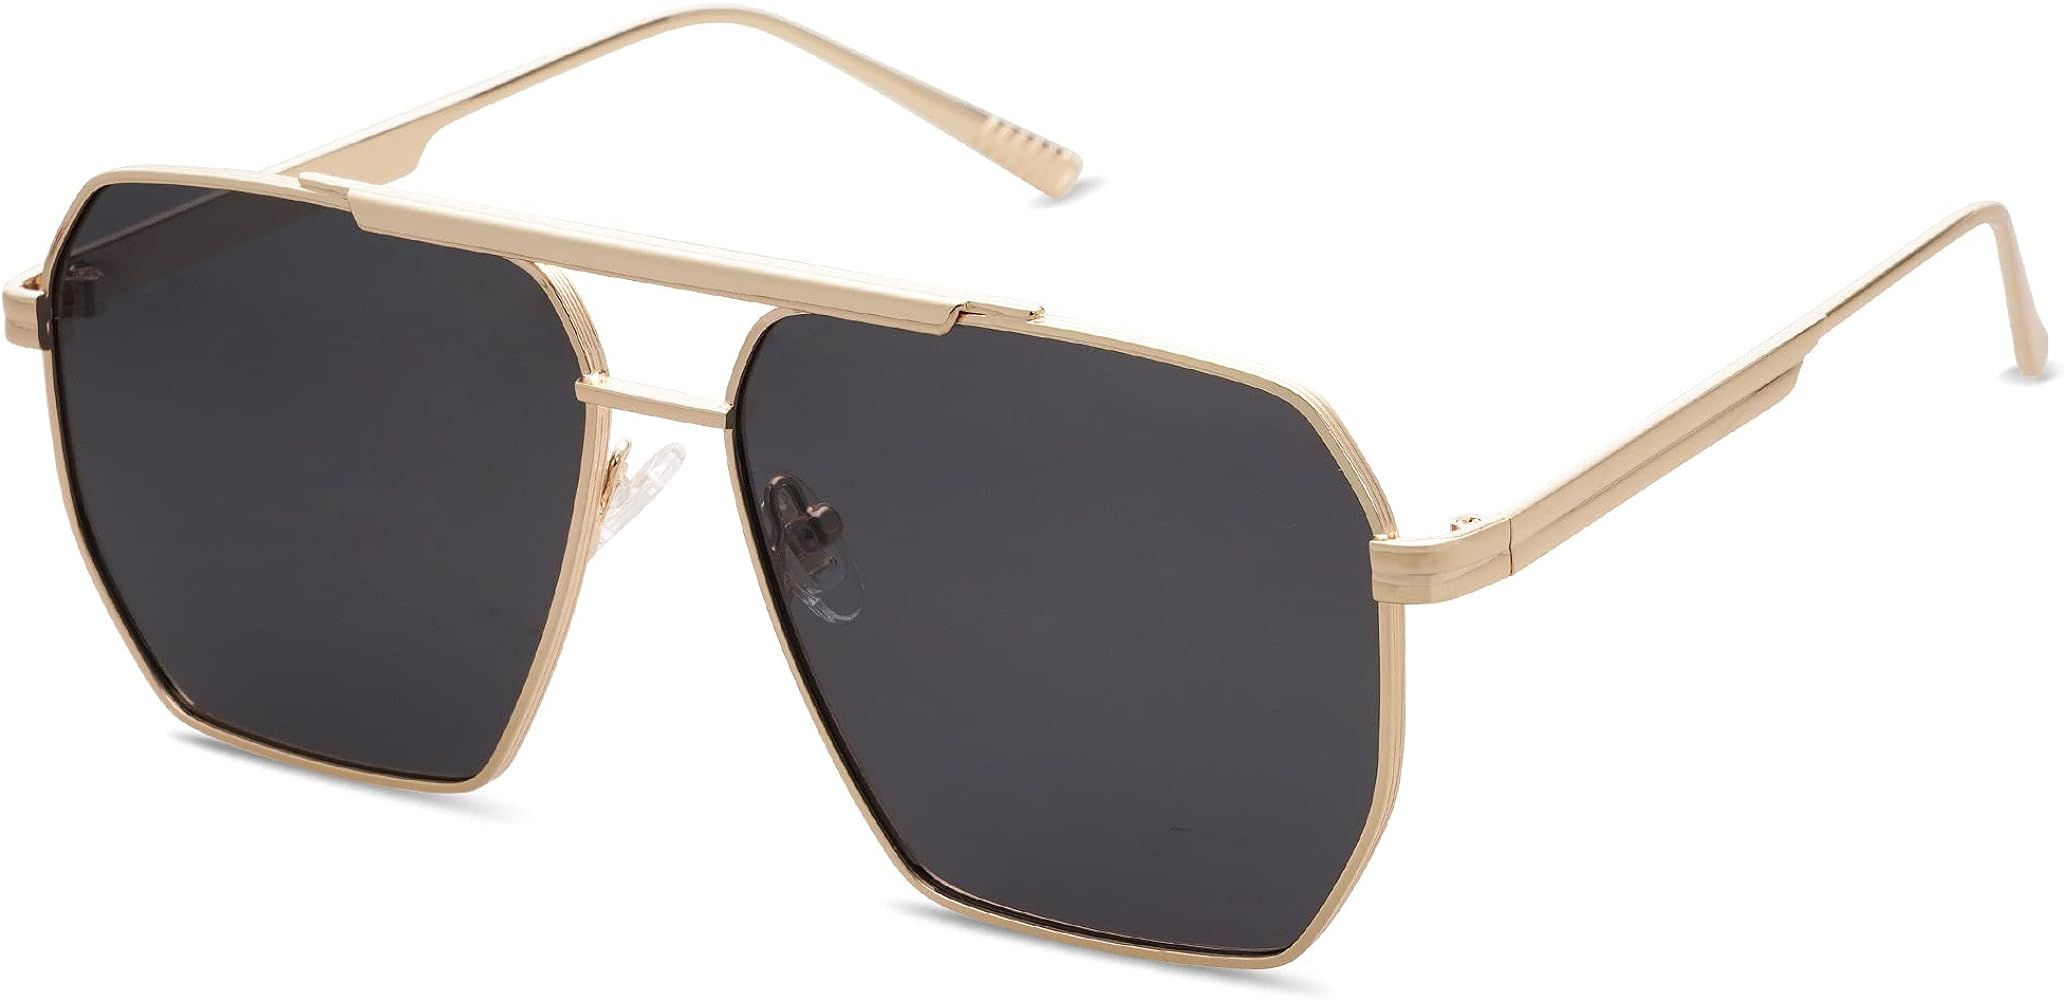 SOJOS Retro Oversized Square Polarized Sunglasses for Women Men Vintage Shades UV400 Classic Large M | Amazon (US)